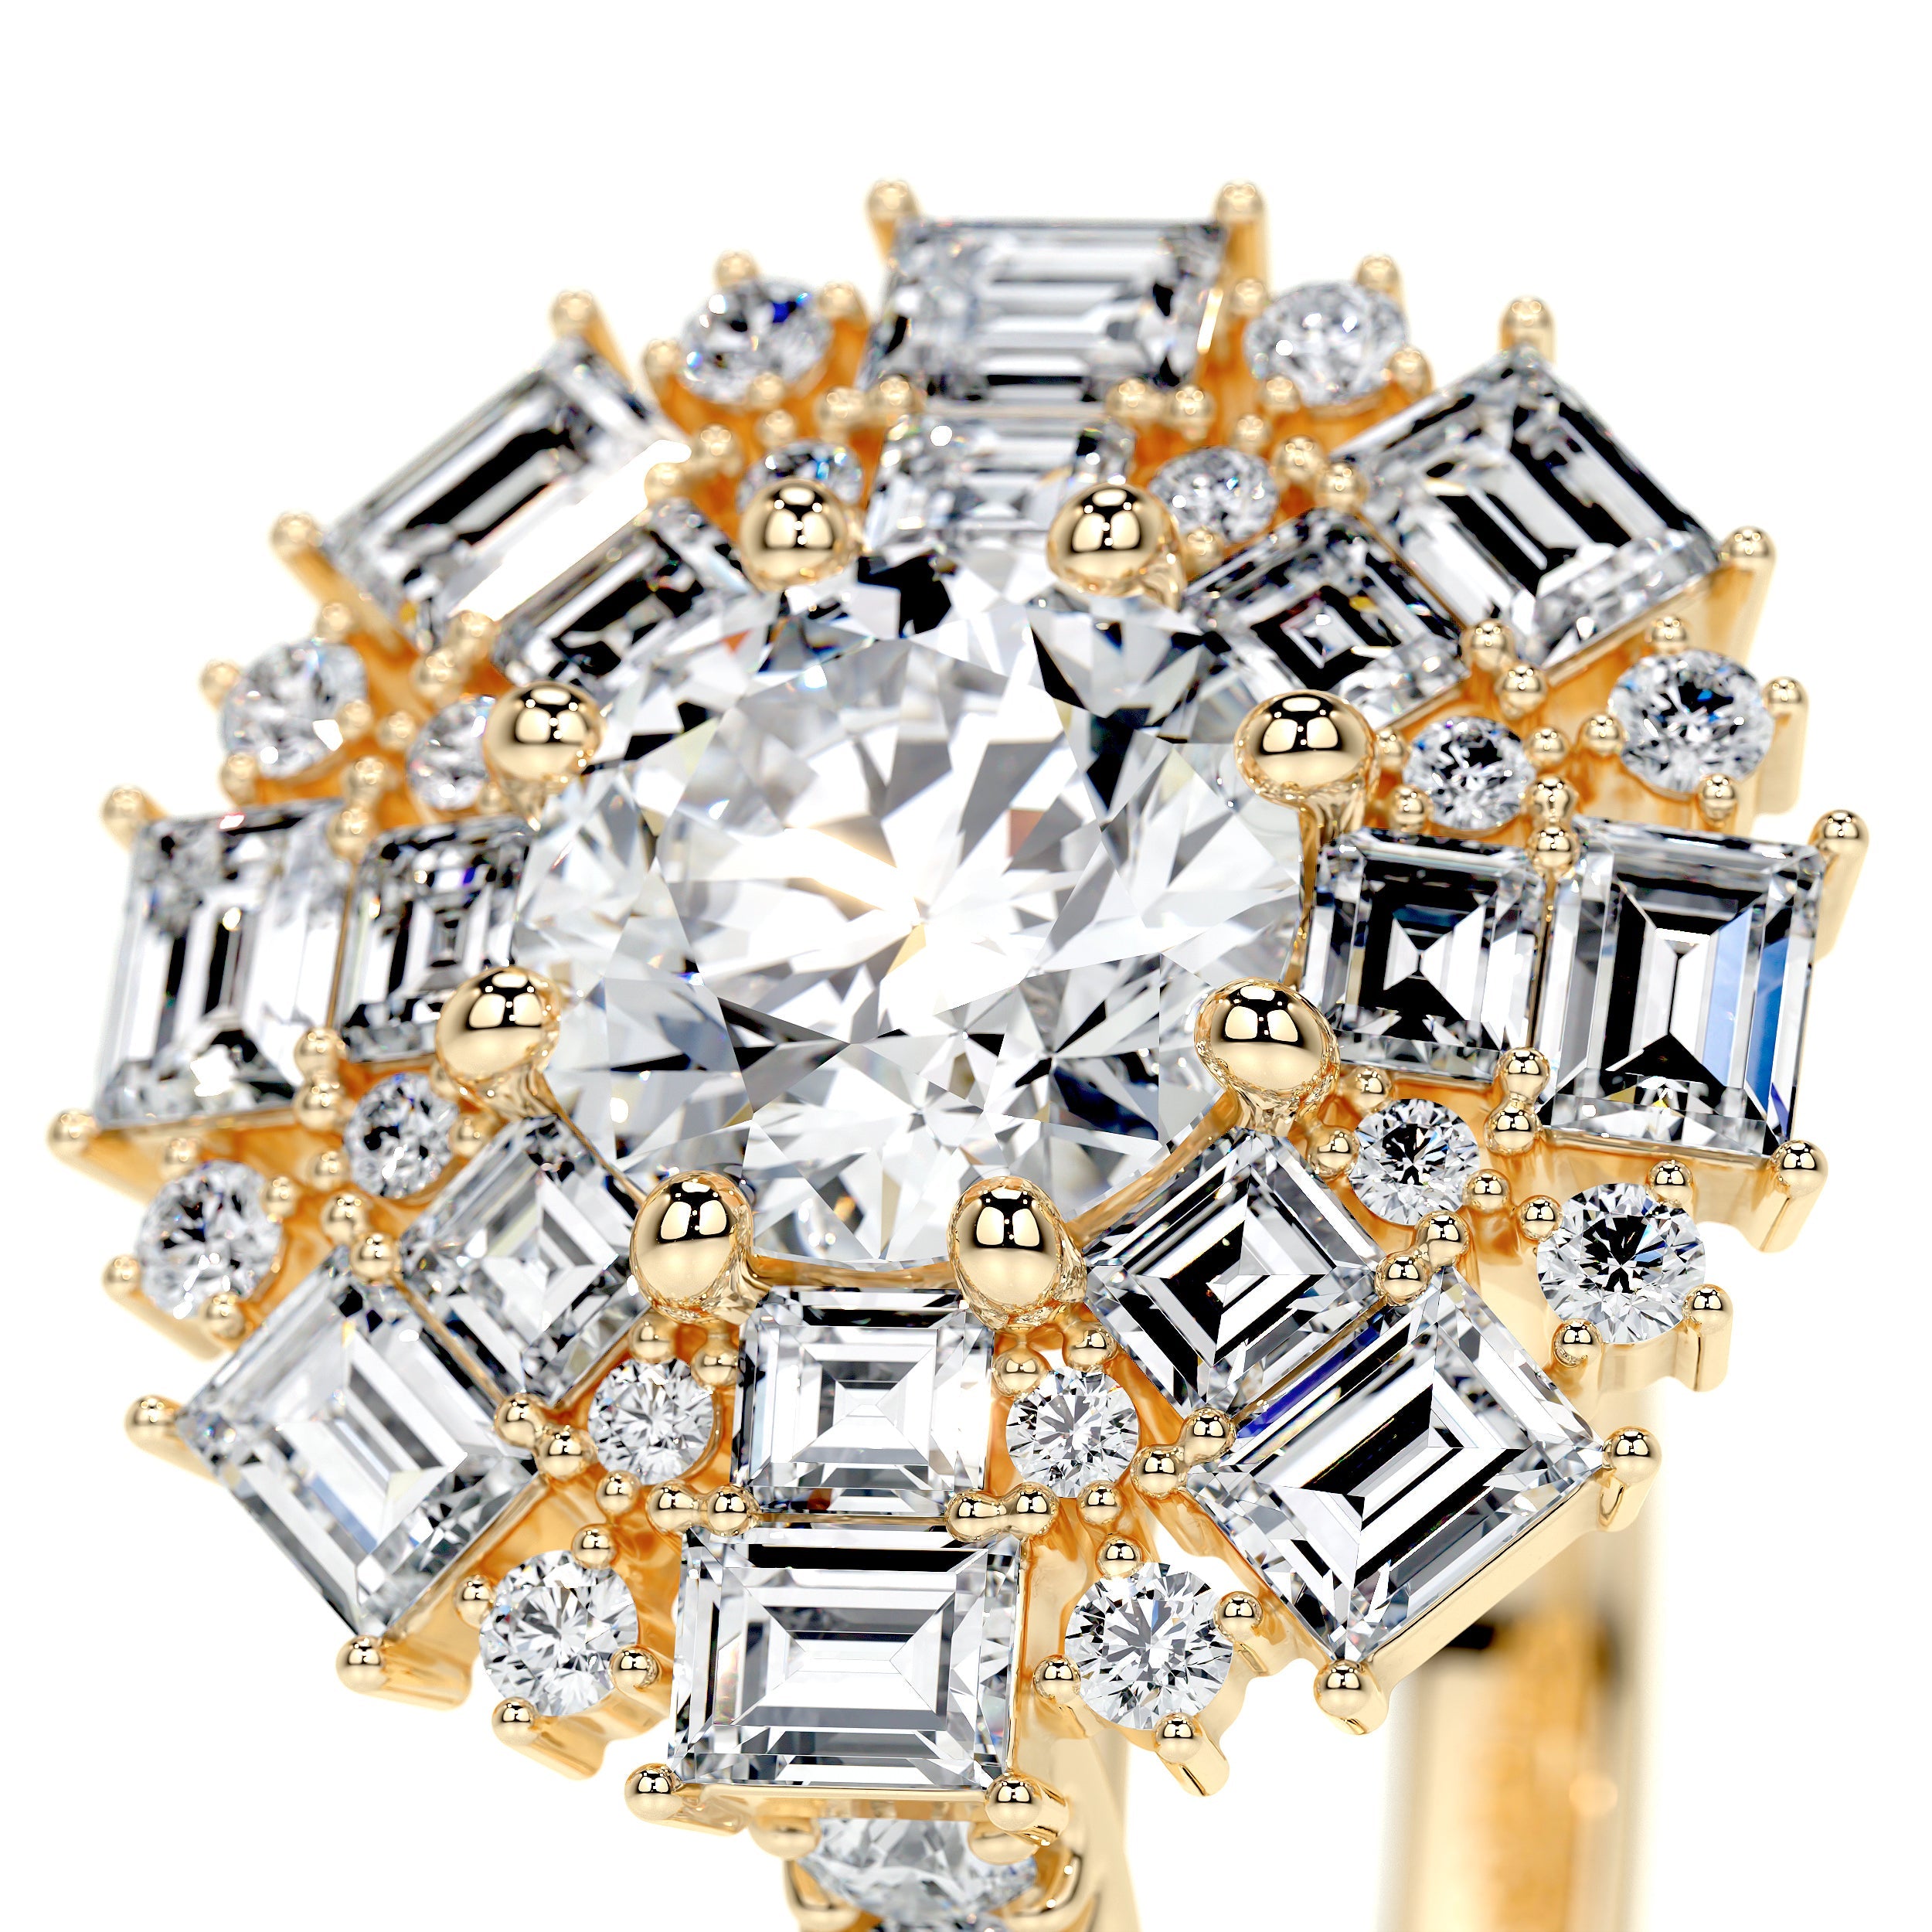 Snowflake Lab Grown Diamond Ring -18K Yellow Gold